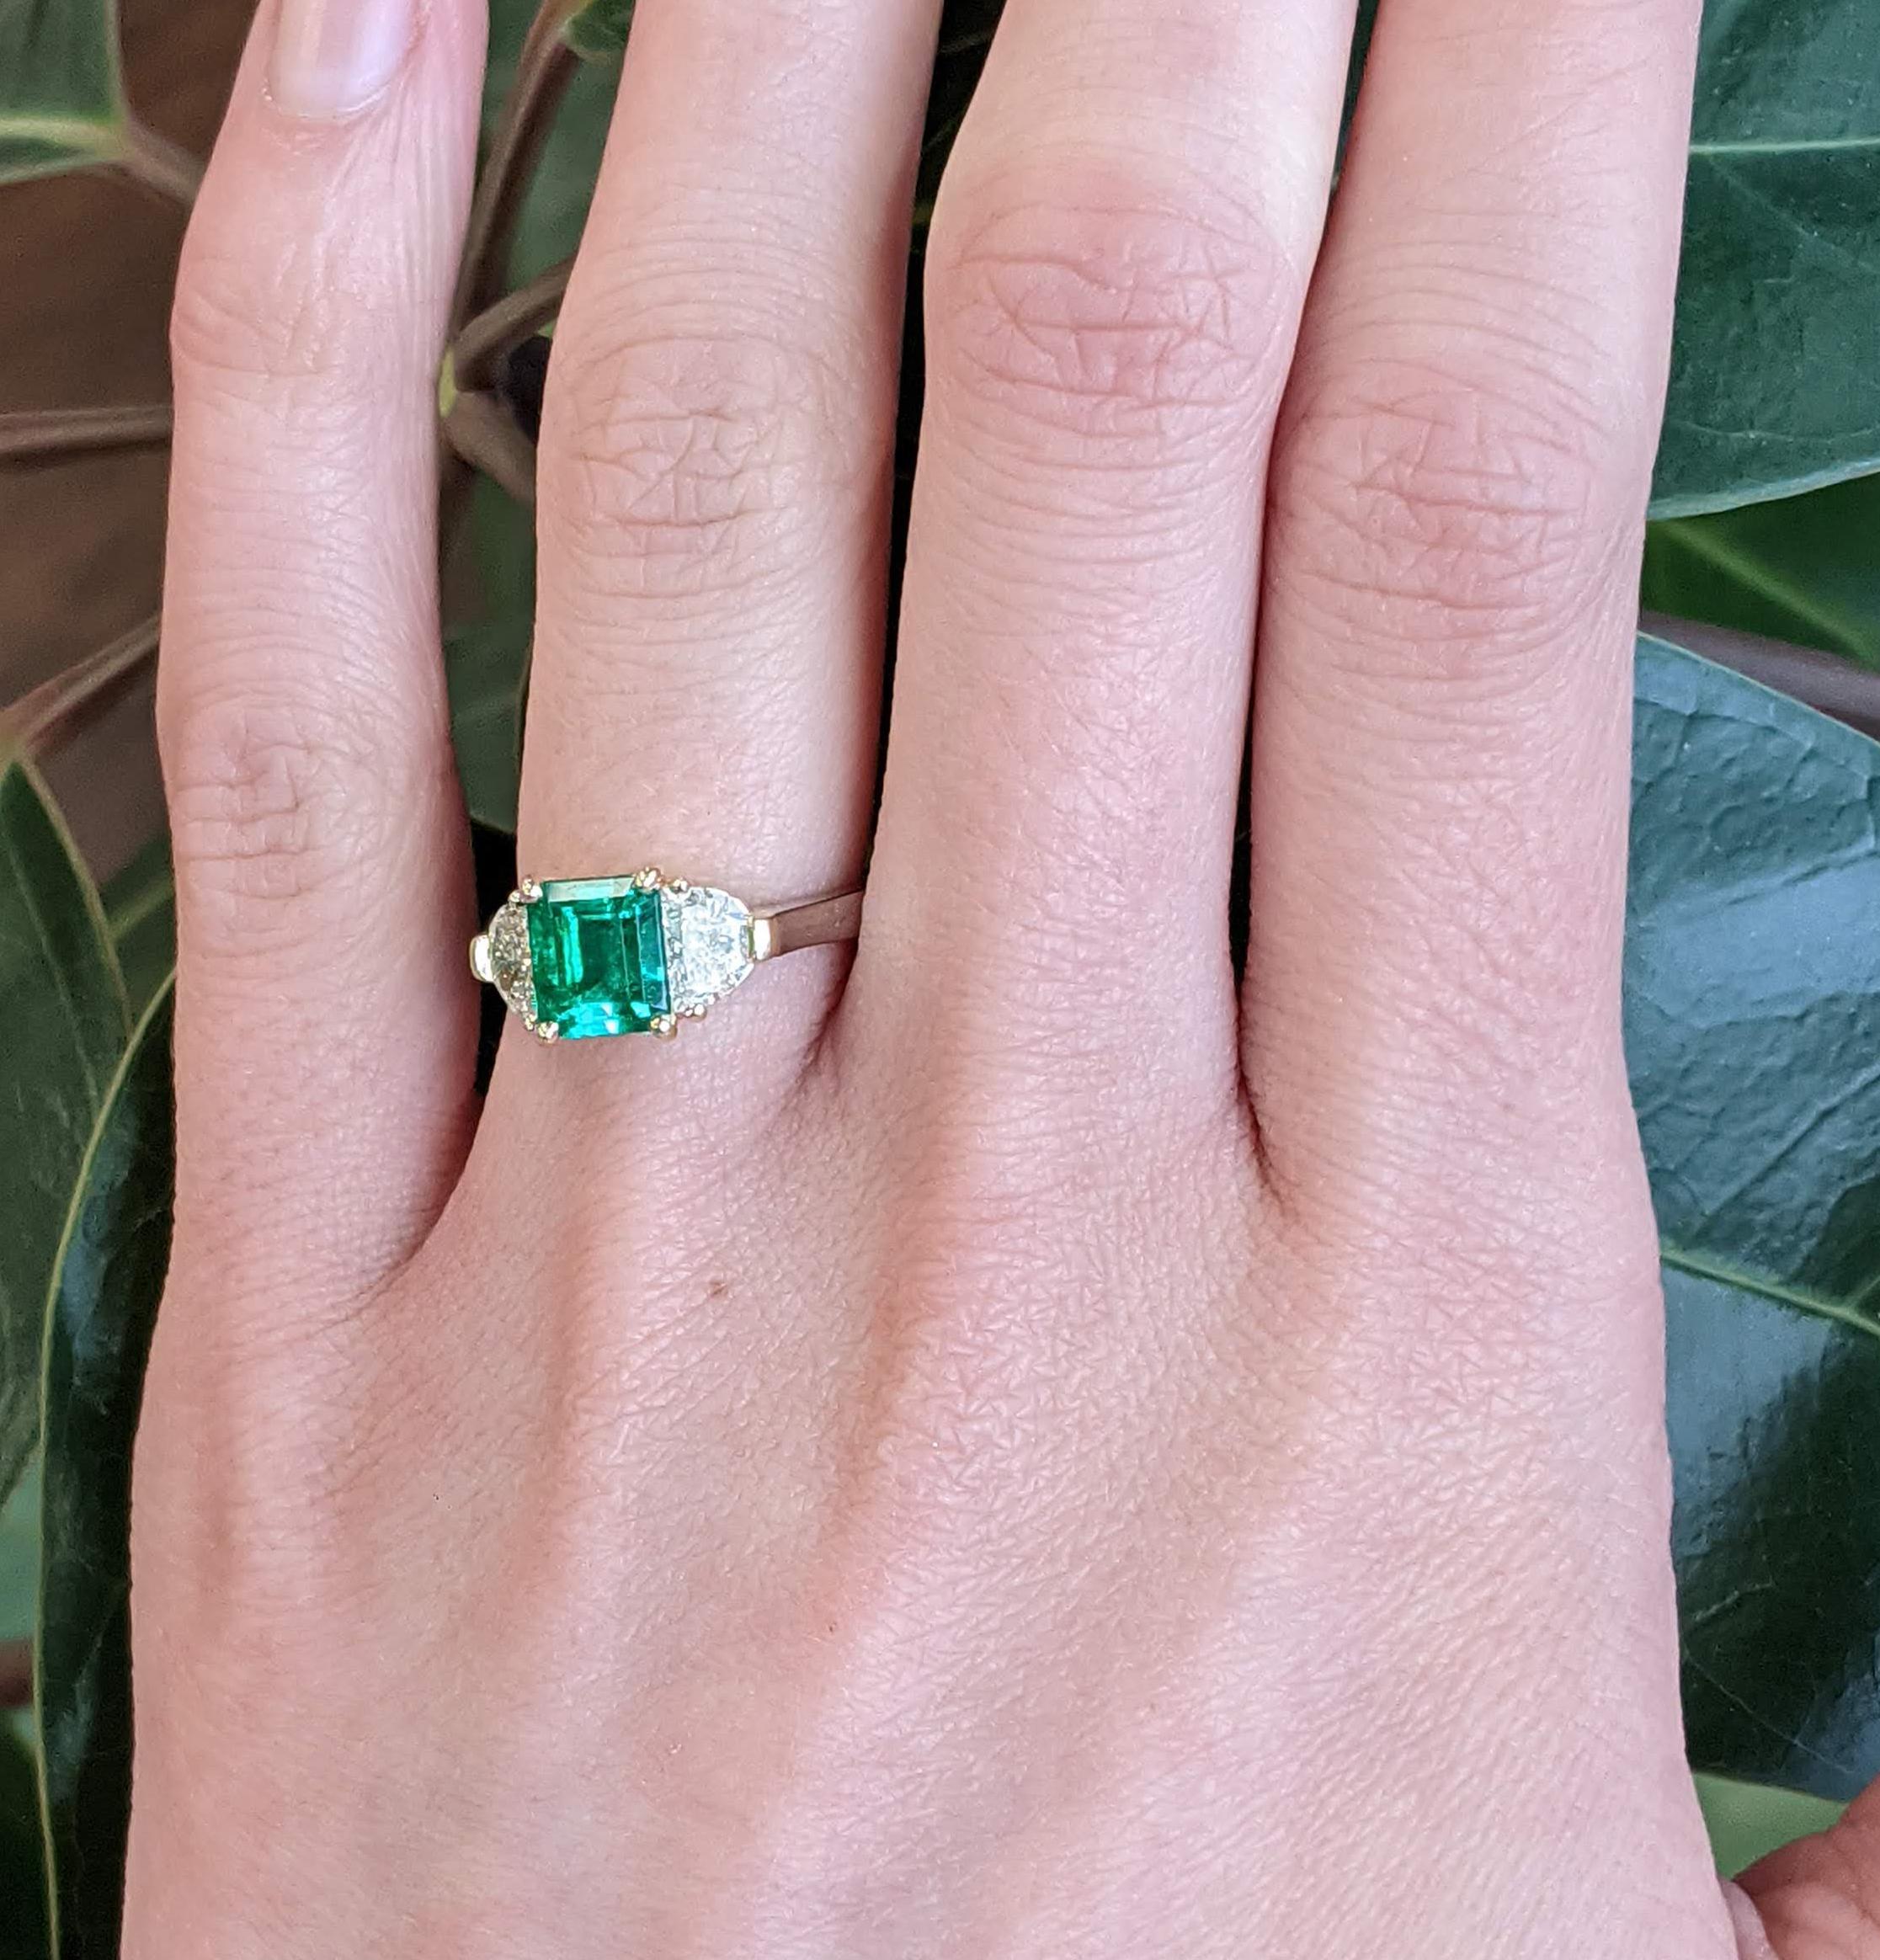 Dieser atemberaubende Ring aus 18 Karat Gelbgold und Platin besticht durch einen tiefgrünen Smaragd in der Mitte, der von zwei perfekt aufeinander abgestimmten weißen Halbmond-Diamanten flankiert wird. Der Smaragd in der Mitte hat eine